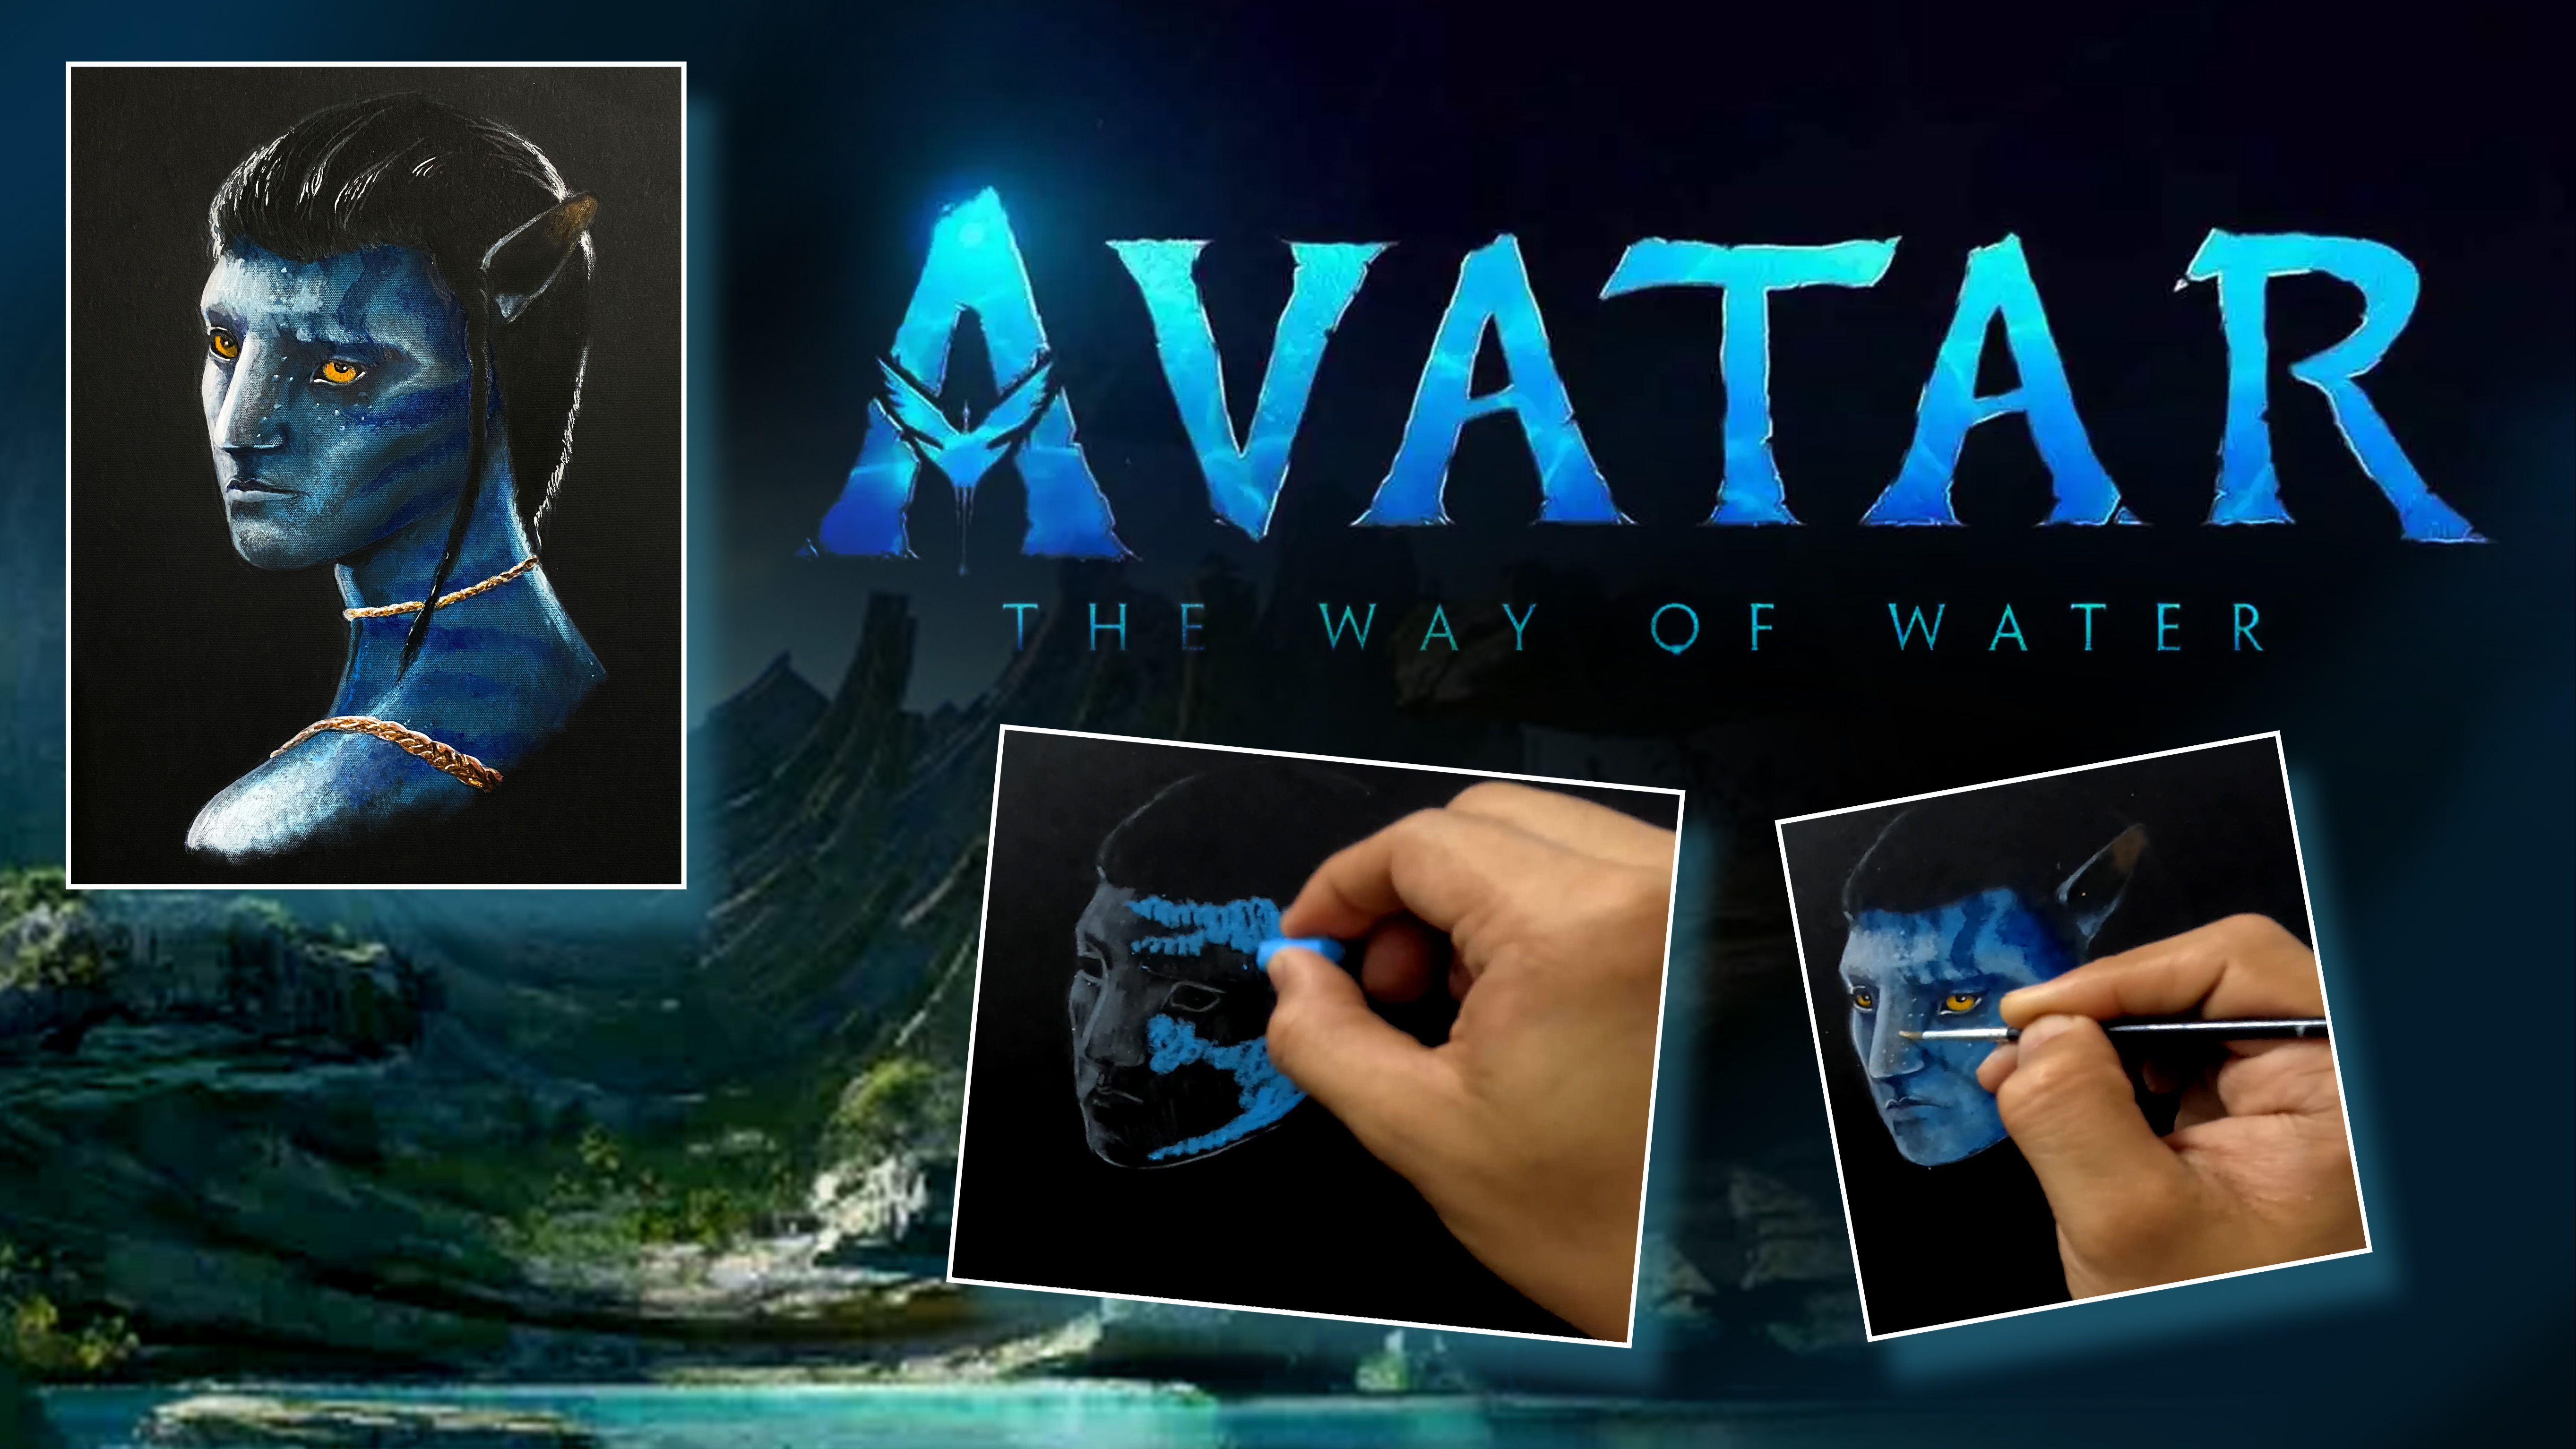 Hướng dẫn vẽ Avatar: Con đường của Nước: Bạn yêu thích những bộ phim tưởng tượng và muốn trải nghiệm chính bản thân việc tạo ra các nhân vật yêu thích? Hãy tham gia vào hướng dẫn vẽ Avatar: Con đường của Nước và học hỏi các kỹ năng tự thiết kế một nhân vật Avatar cực kỳ ấn tượng. Không những giúp bạn giải trí mà còn phát triển thêm khả năng nghệ thuật của bản thân nữa đấy.